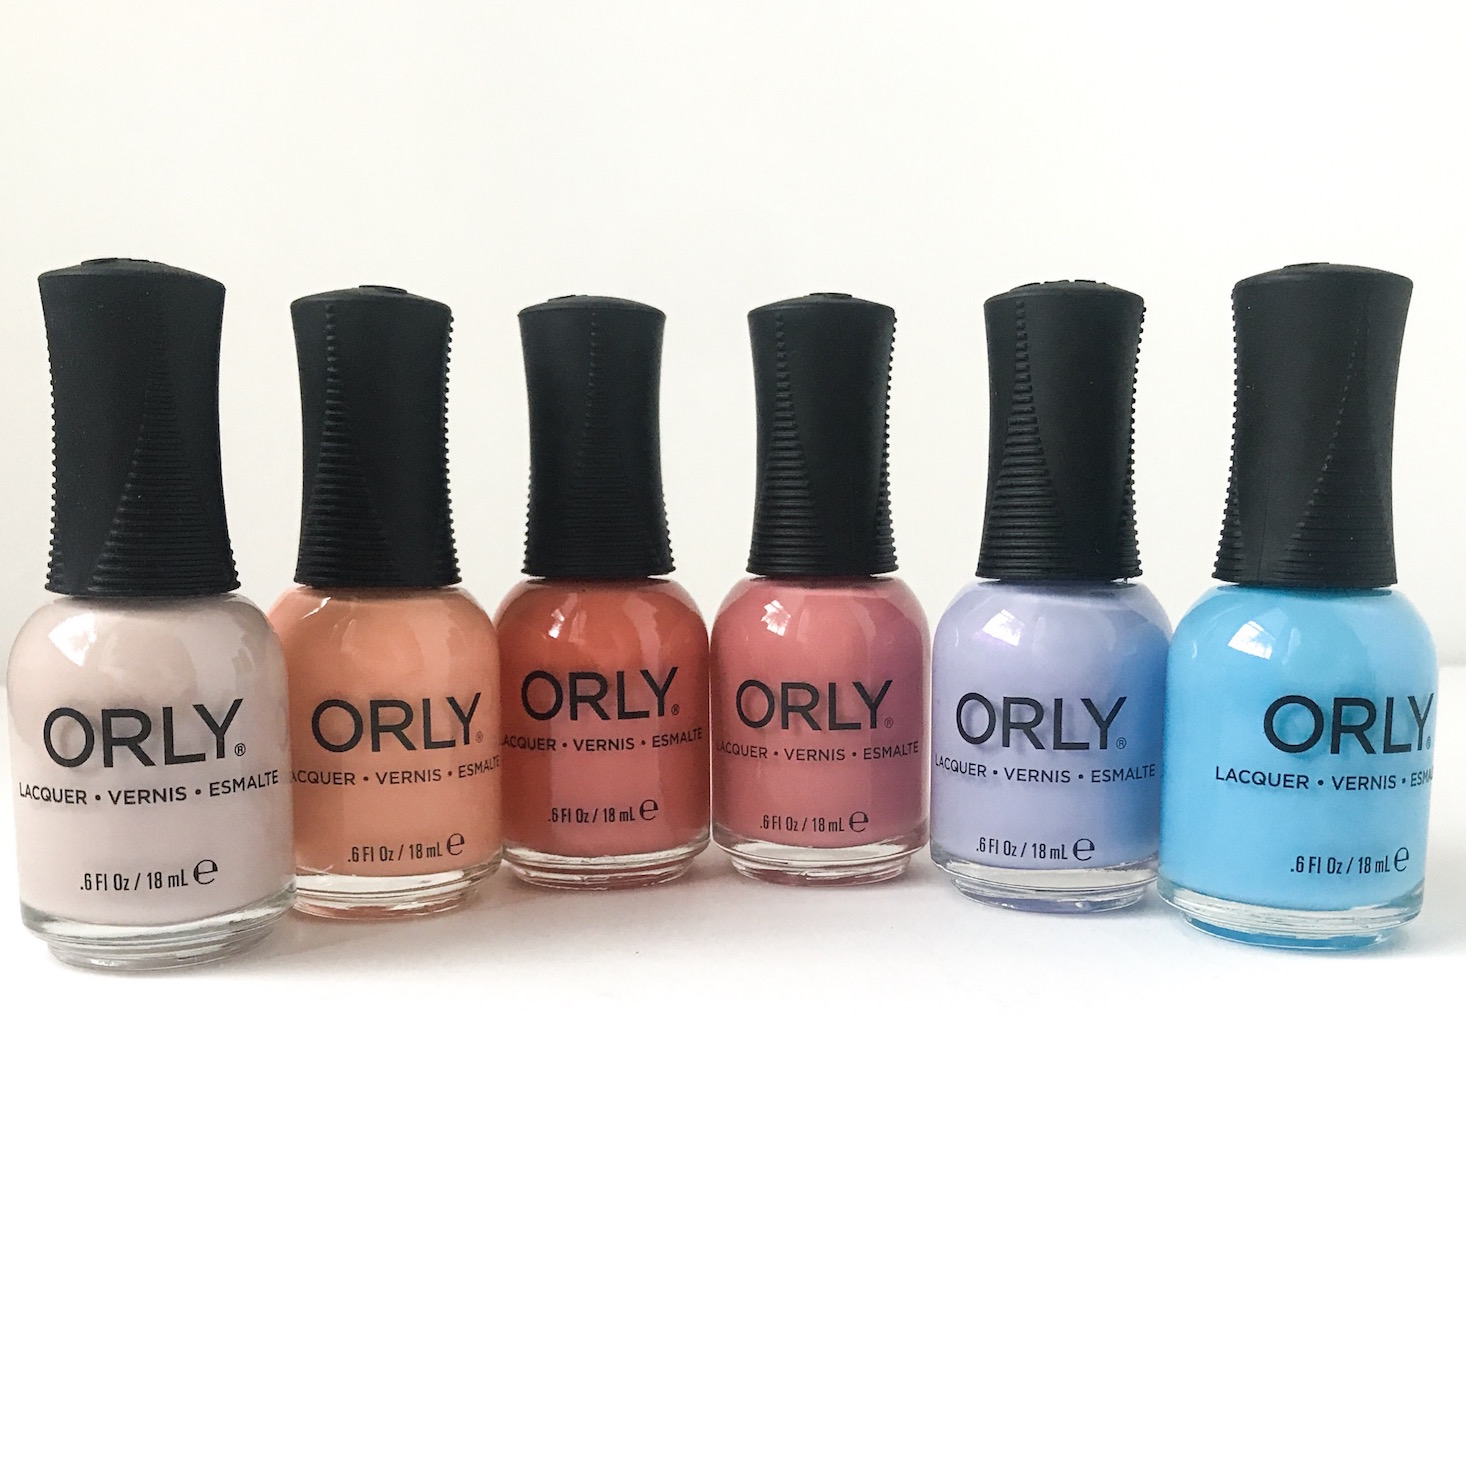 ORLY Color Pass Nail Polish Review + Coupon – Spring 2019 | MSA